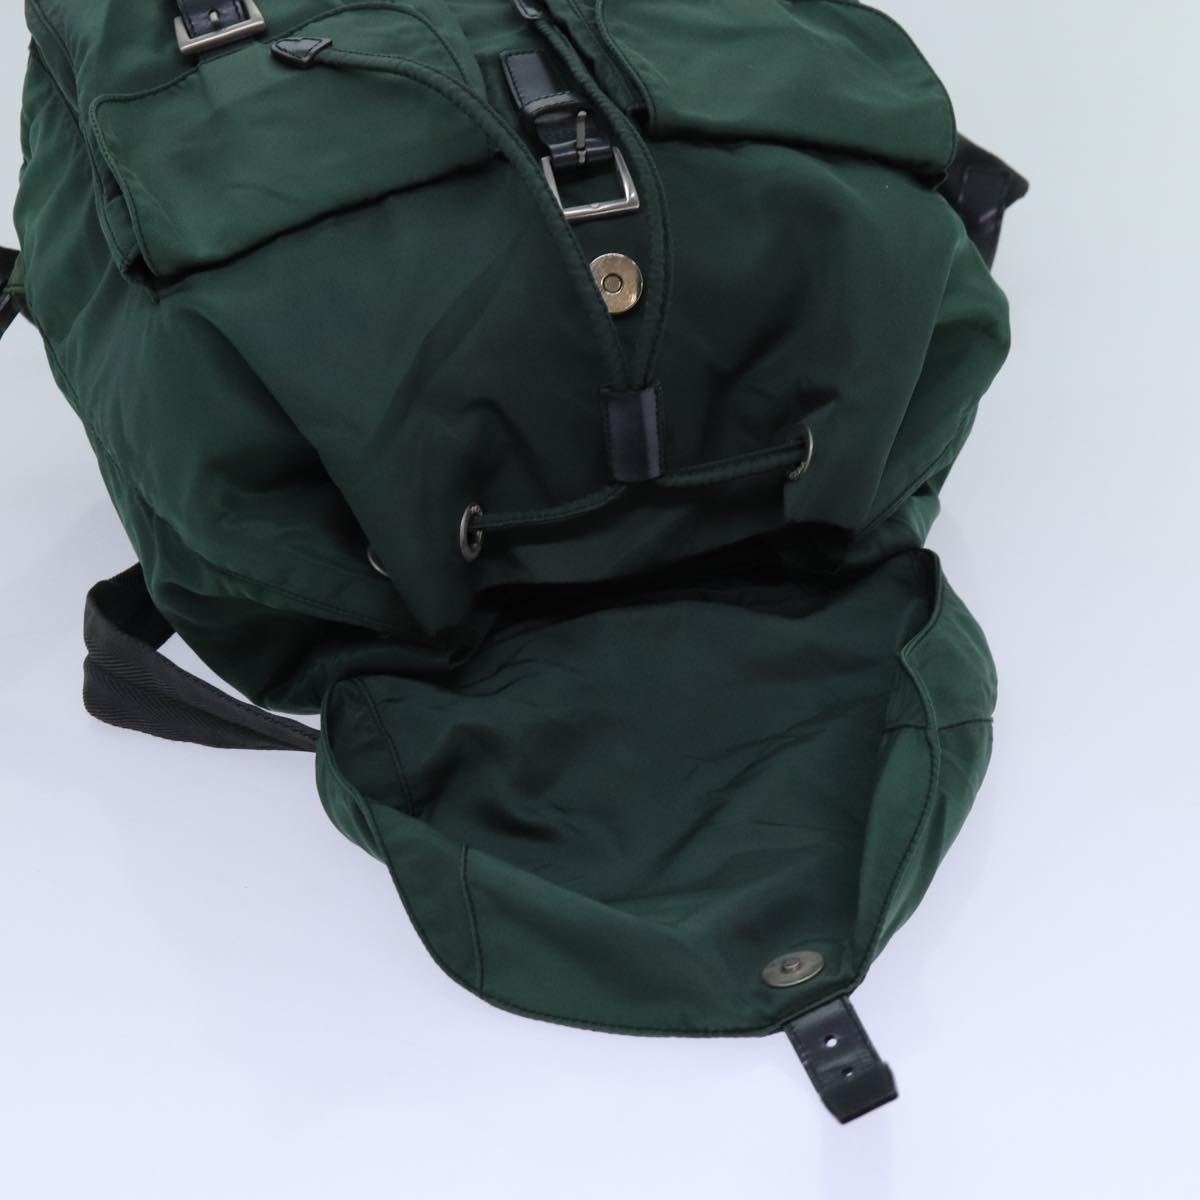 PRADA Backpack Nylon Green Auth bs13563